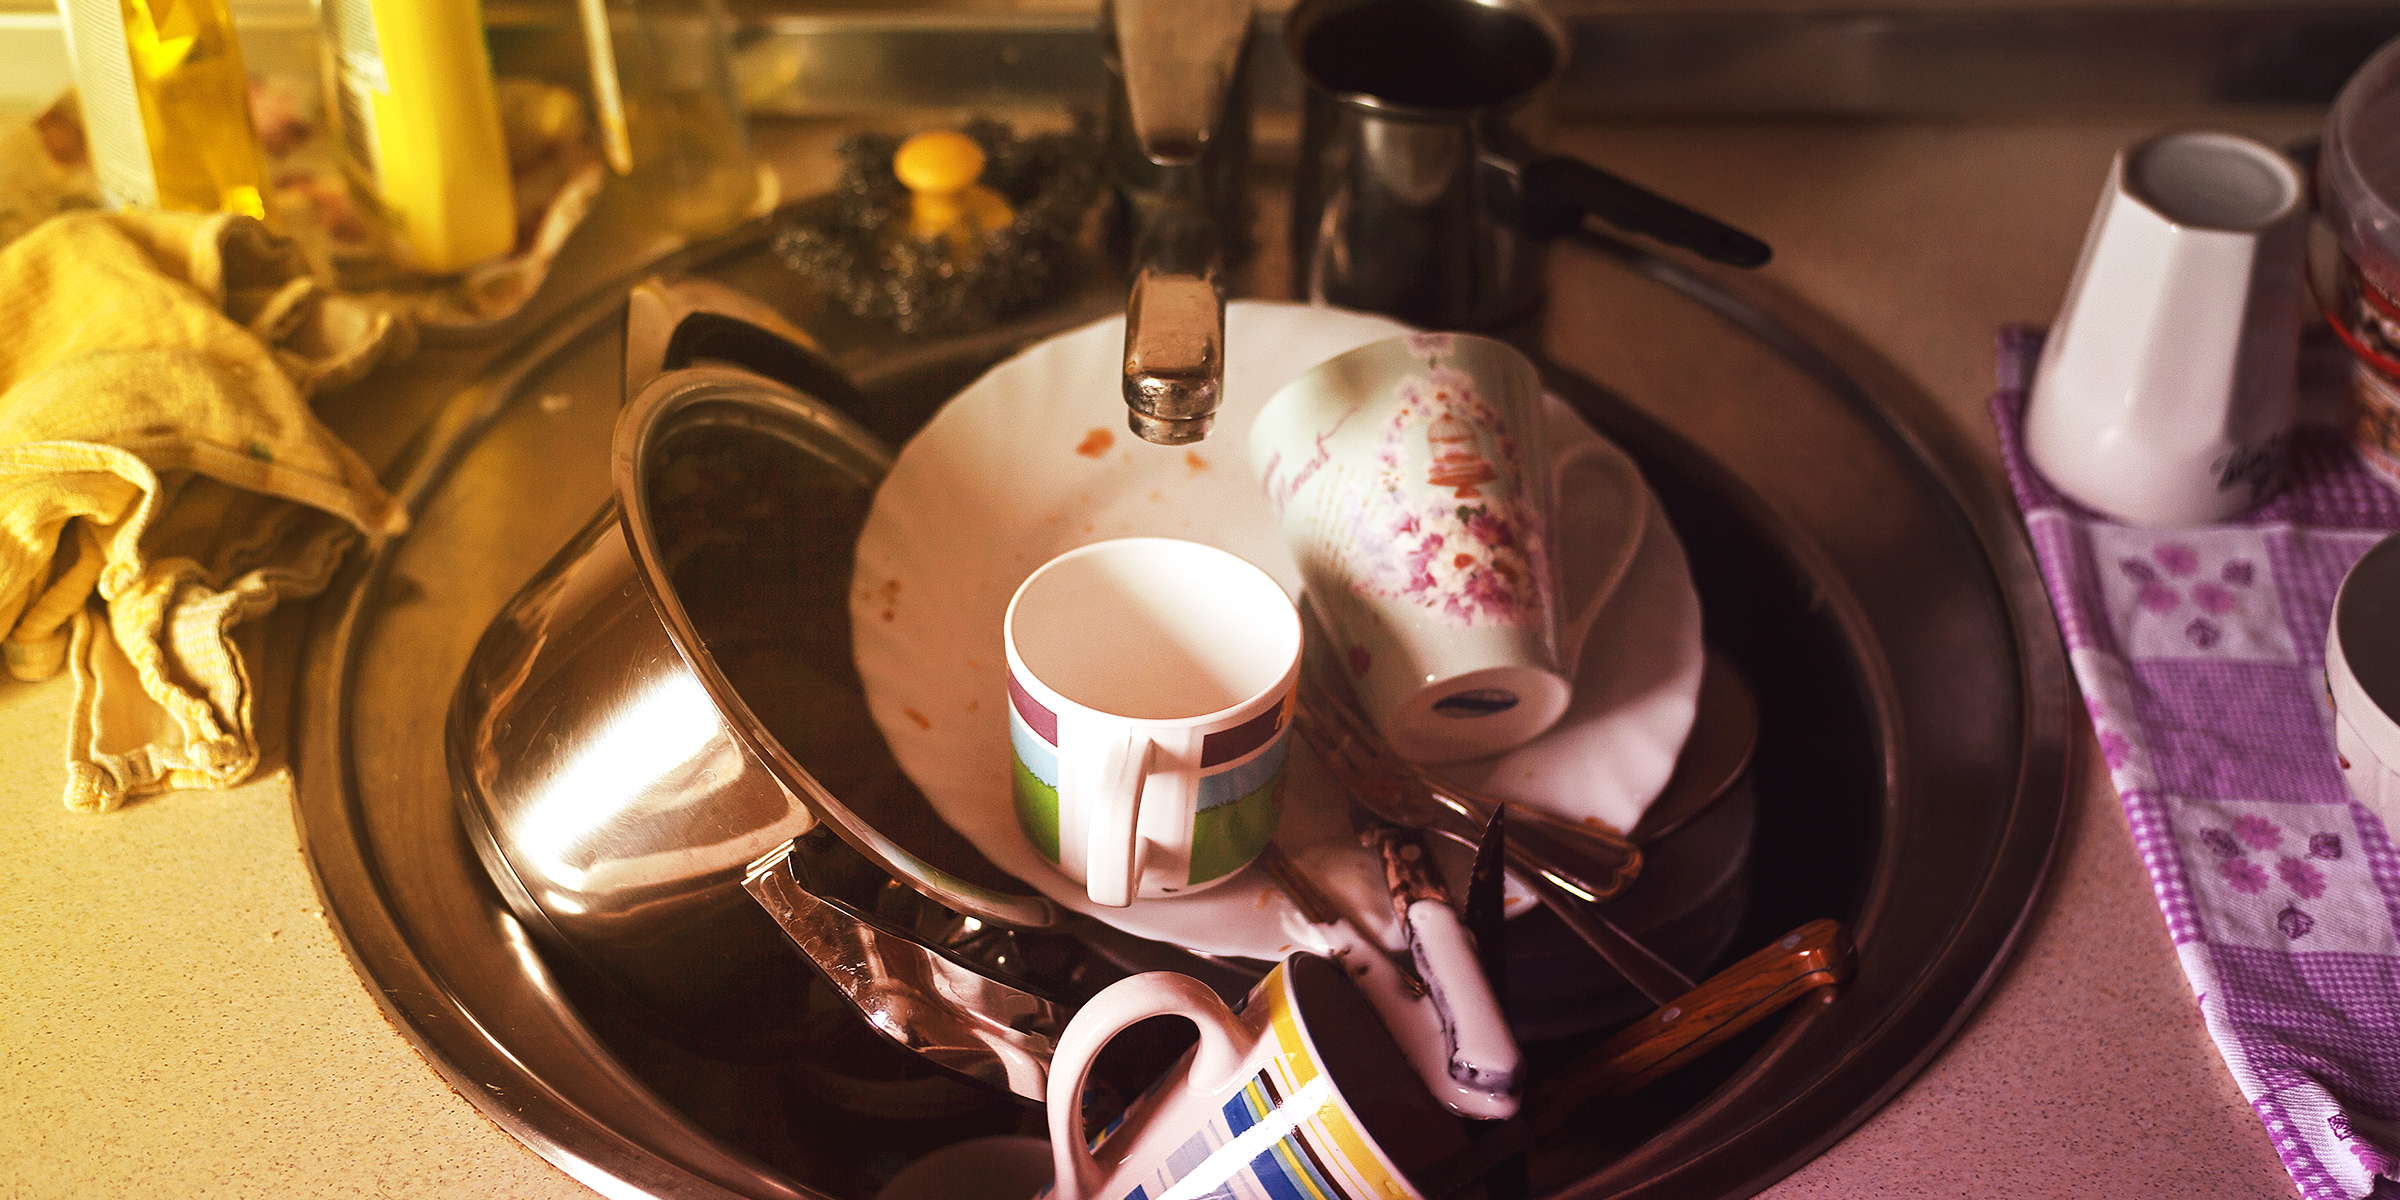 Une pile de vaisselle | Source : Flickr